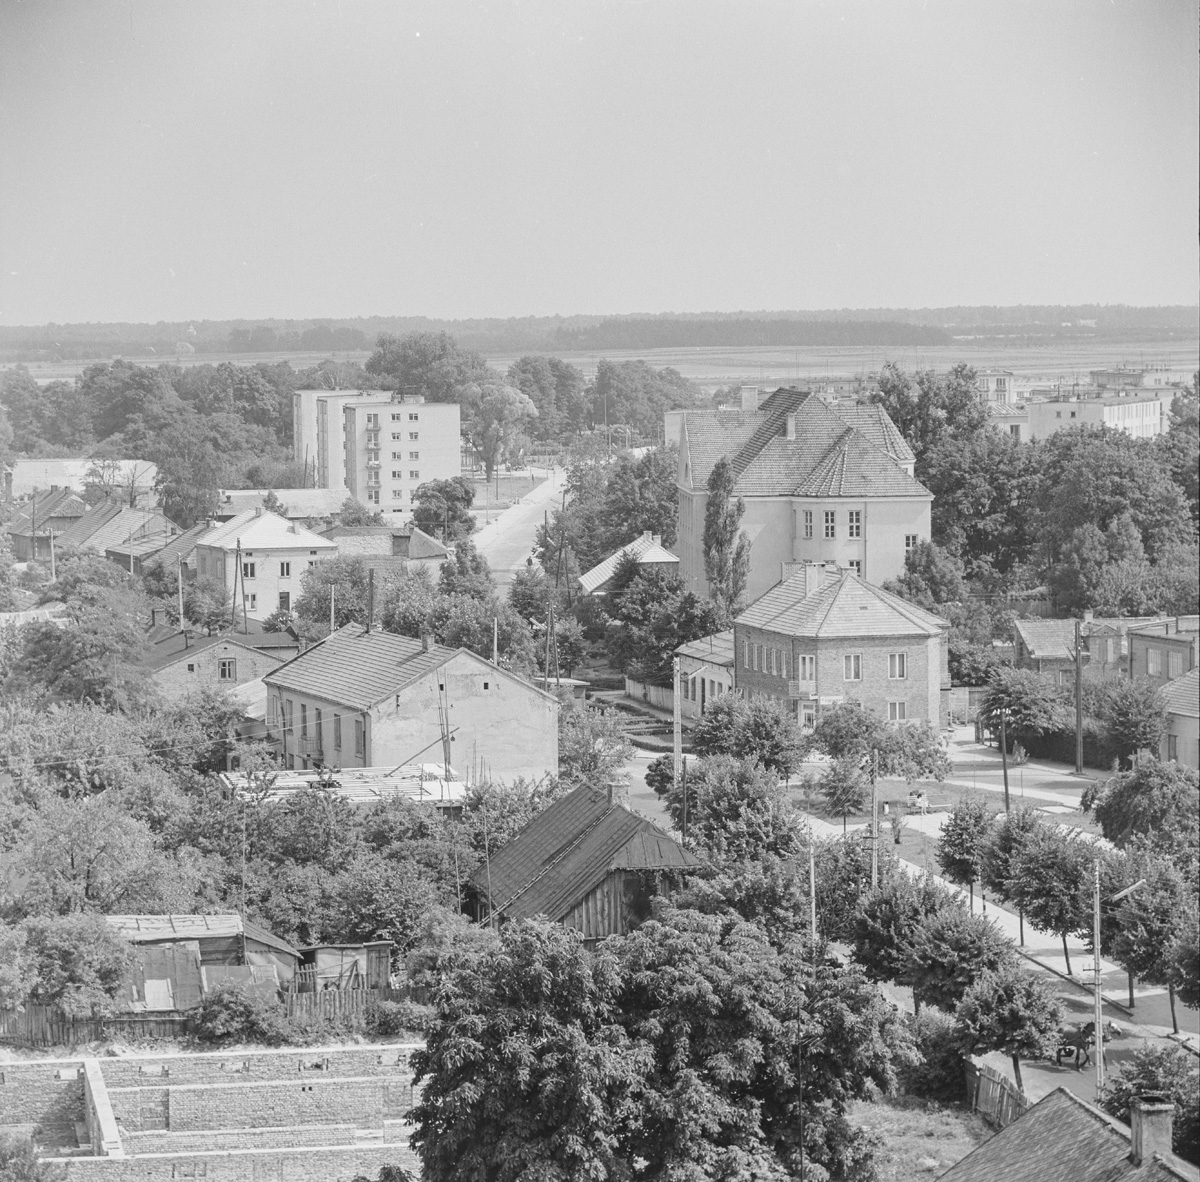 Widoki wieży kościoła